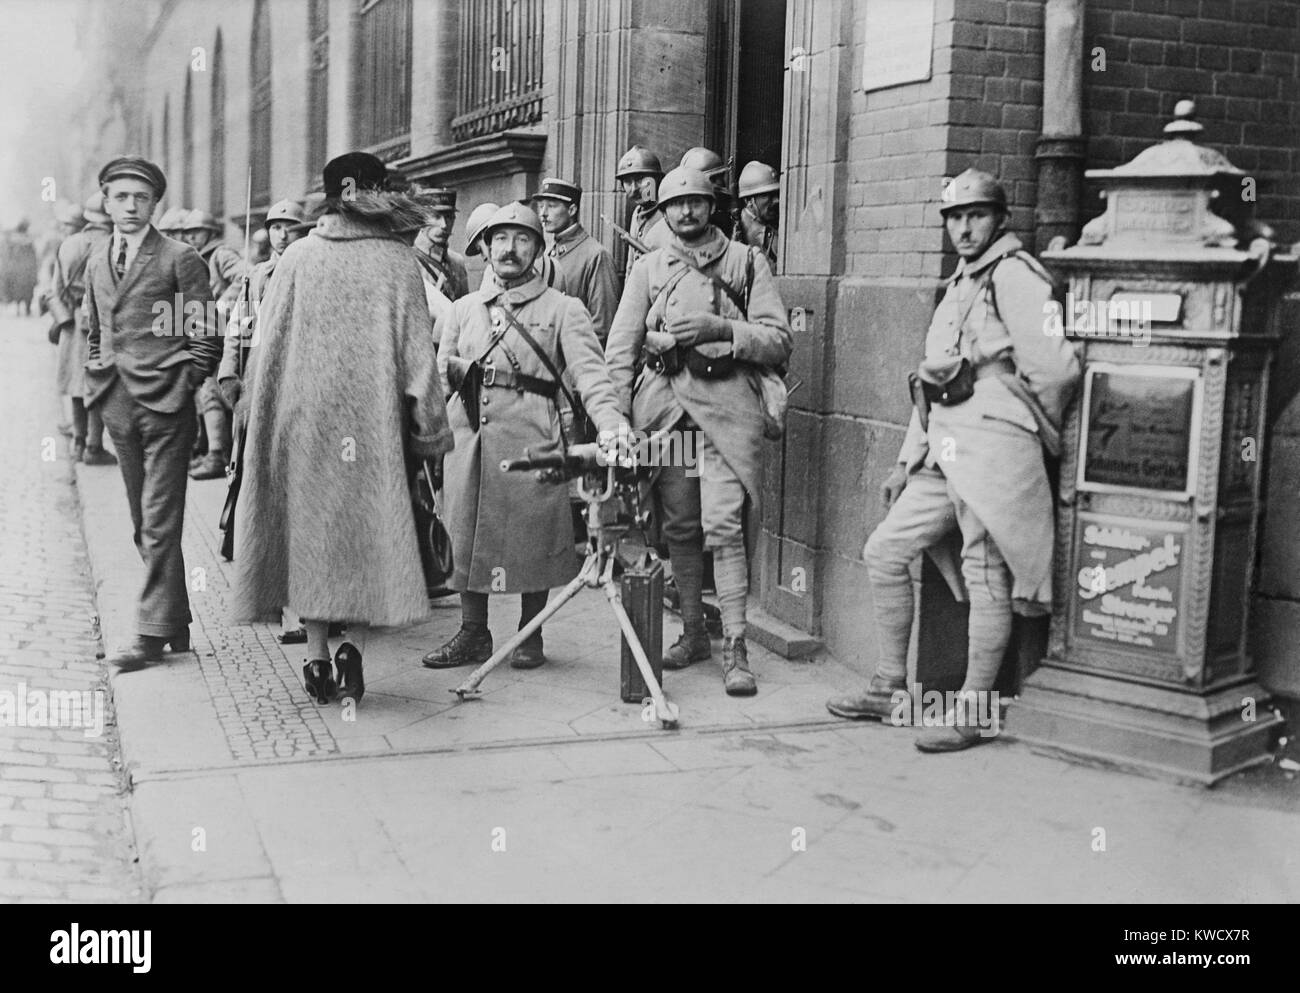 Soldats français avec une mitraillette en poste au bureau de poste de Essen, Allemagne, 1923. L'occupation a duré jusqu'en août 1925. Le géant industriel allemand, Krupp avait son siège dans la ville et fut le site de la résistance et de la violence en mars 1923 (BSLOC 2017 2 63) Banque D'Images